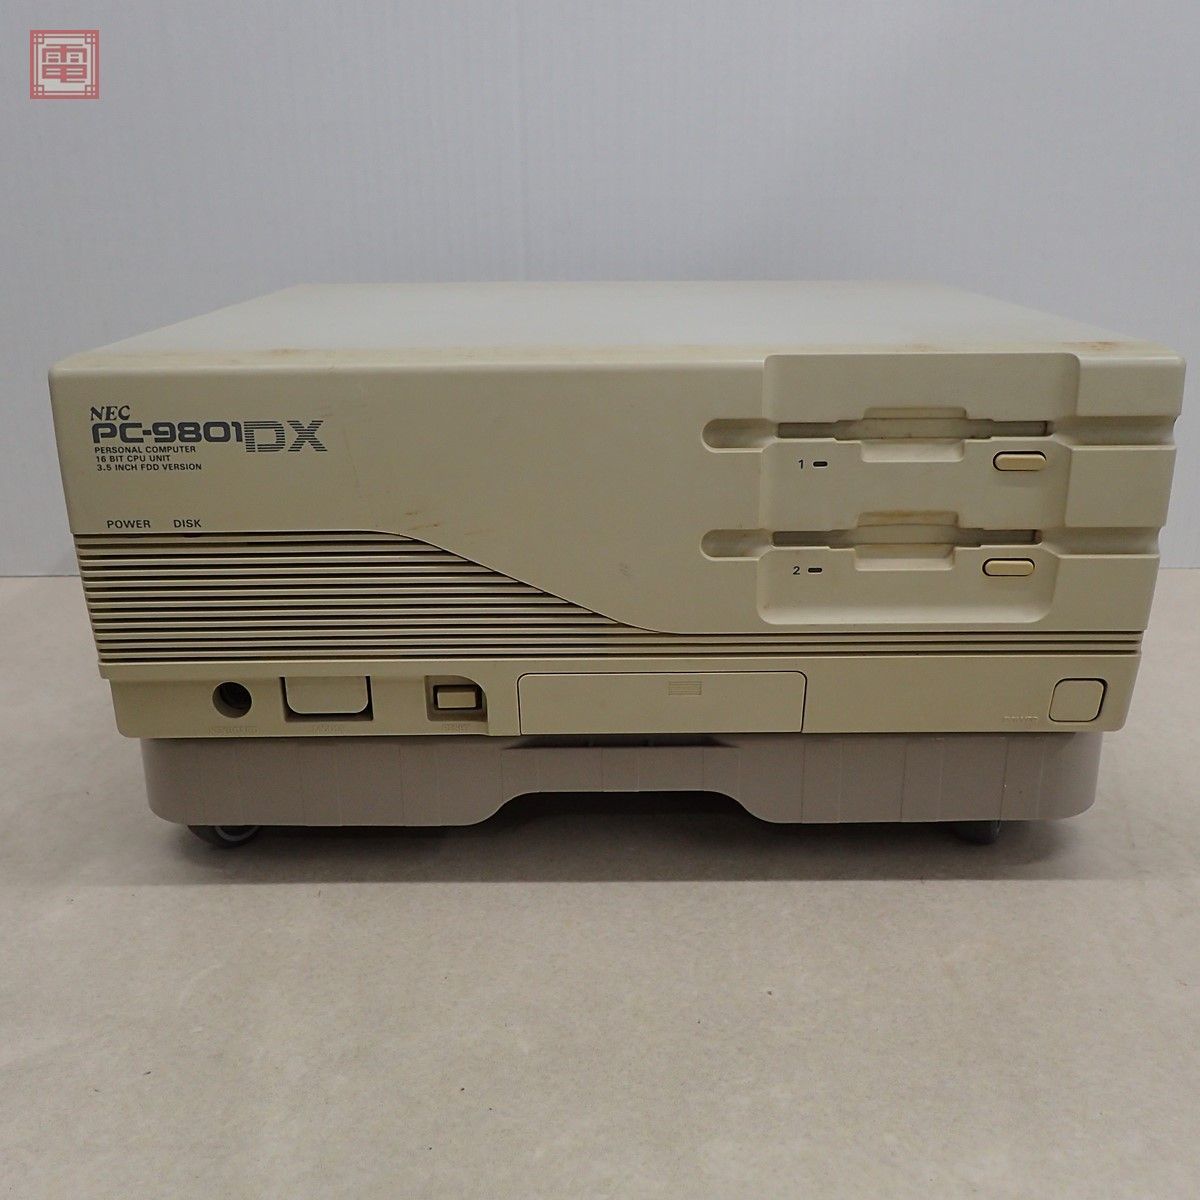 ヤフオク! -「pc9801 dx」(デスクトップ) (PC-98)の落札相場・落札価格